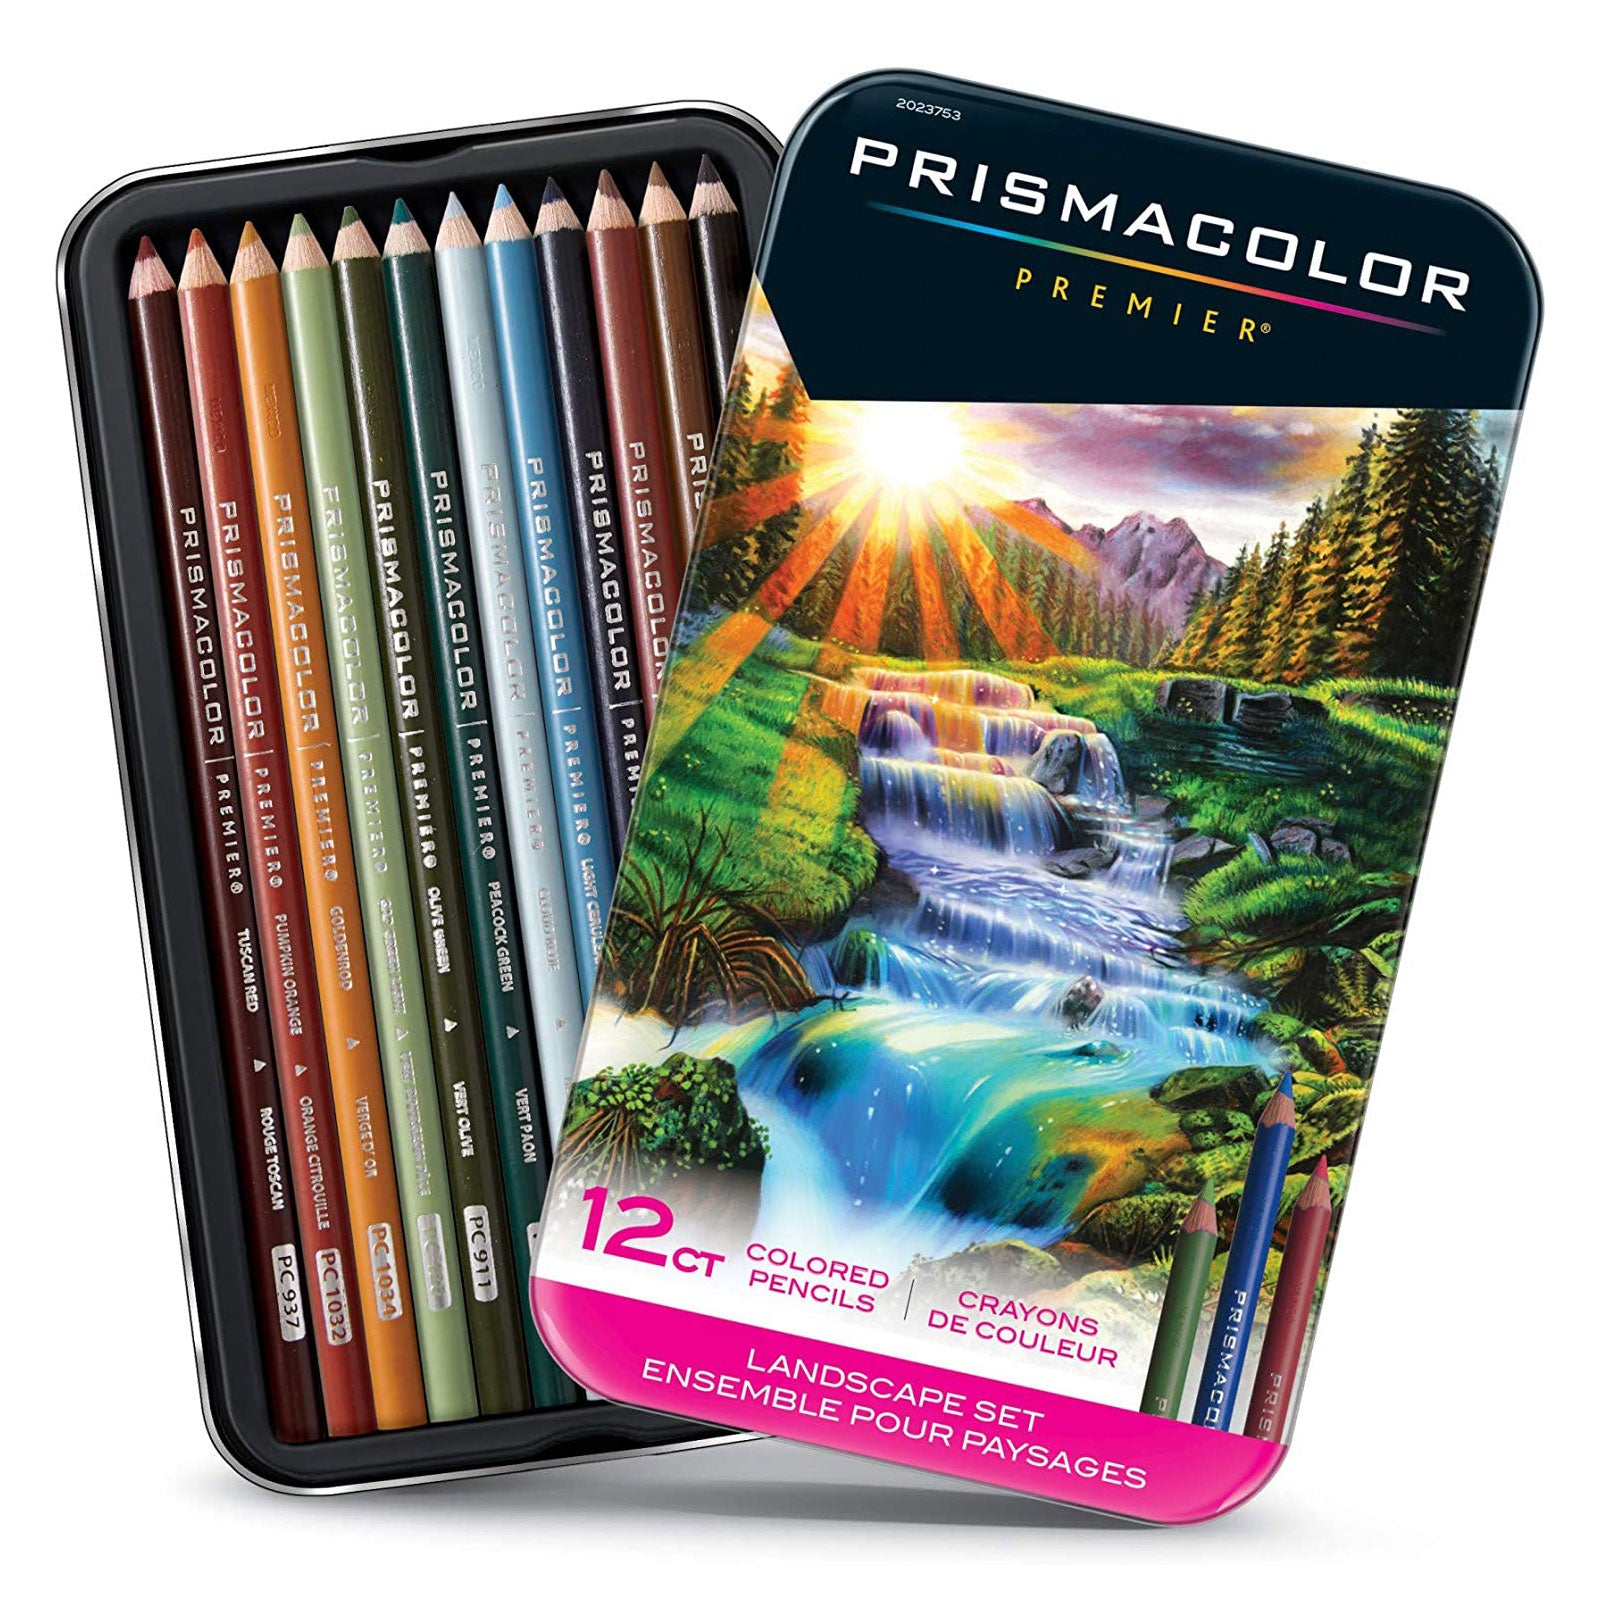 http://oilandcotton.com/cdn/shop/files/Prismacolor-Premier-Colored-Pencils--12-Set_-Landscape.jpg?v=1689604578